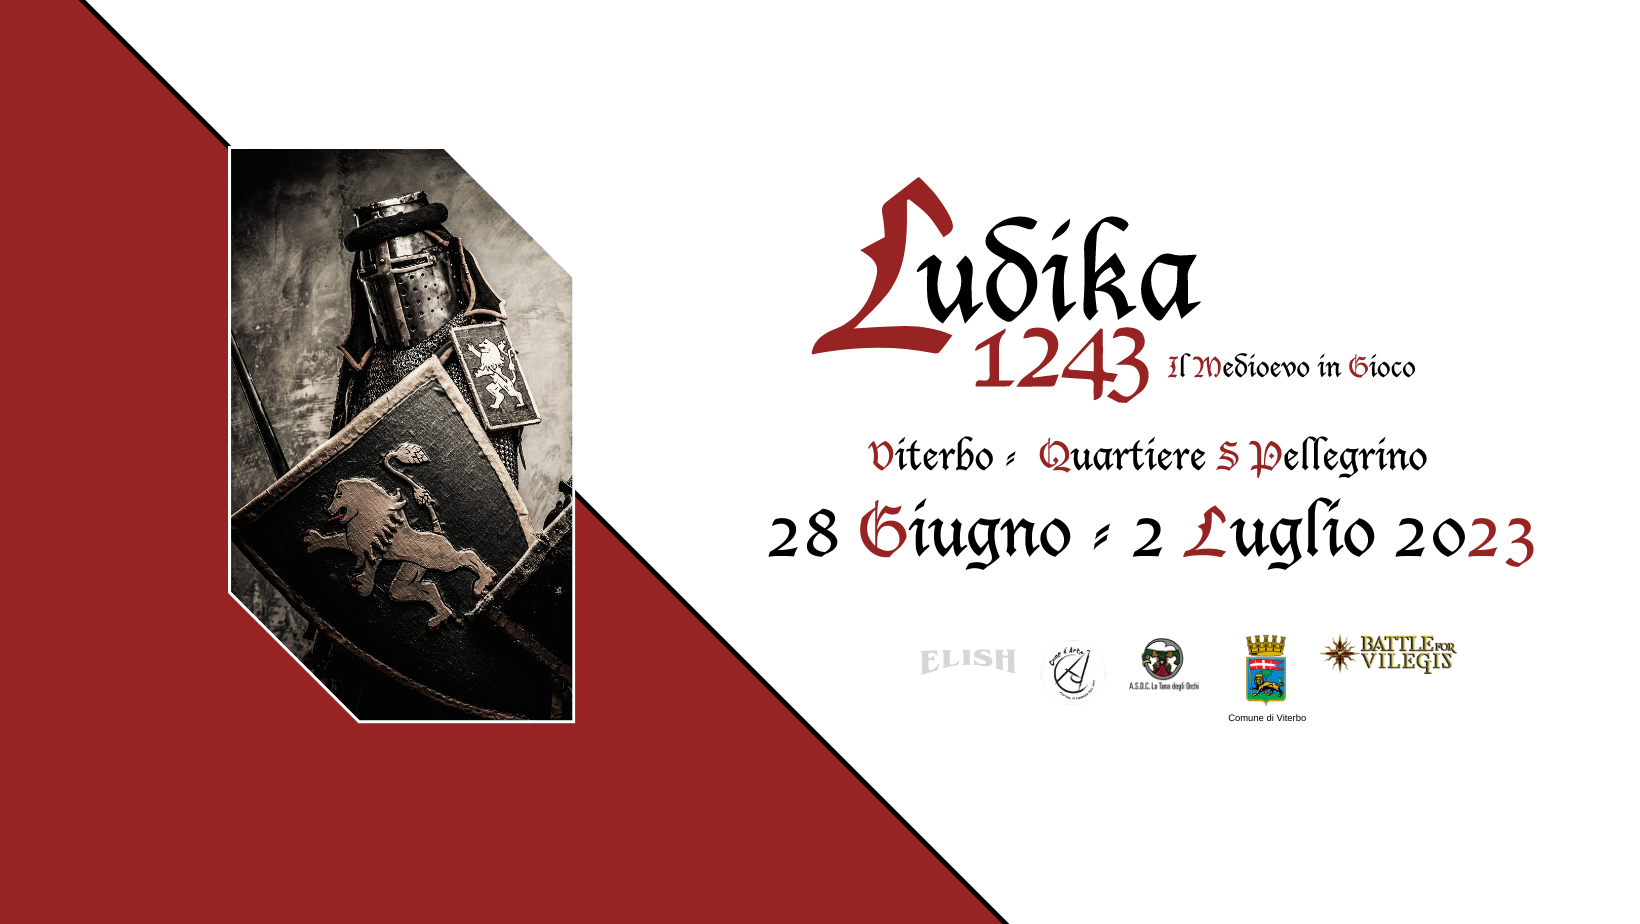 Dal 28 giugno al 02 luglio 2023, la XXIII edizione di Ludika 1243